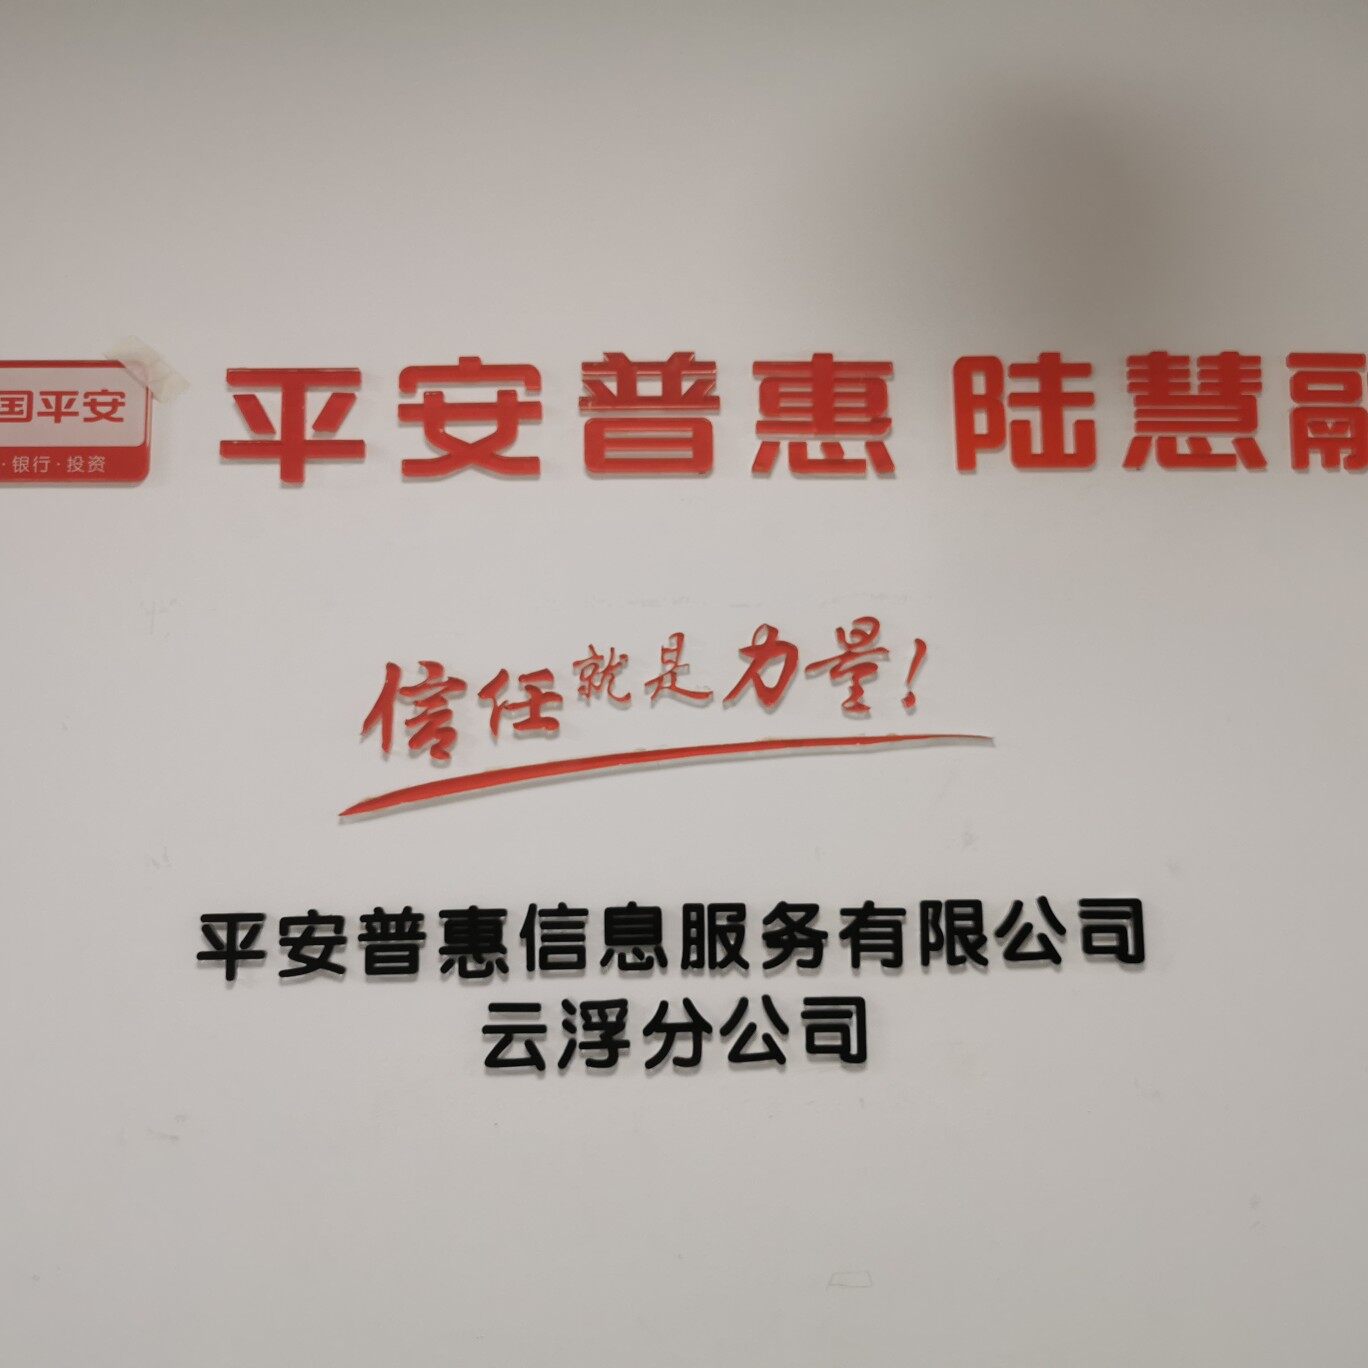 平安普惠信息服务有限公司云浮分公司logo